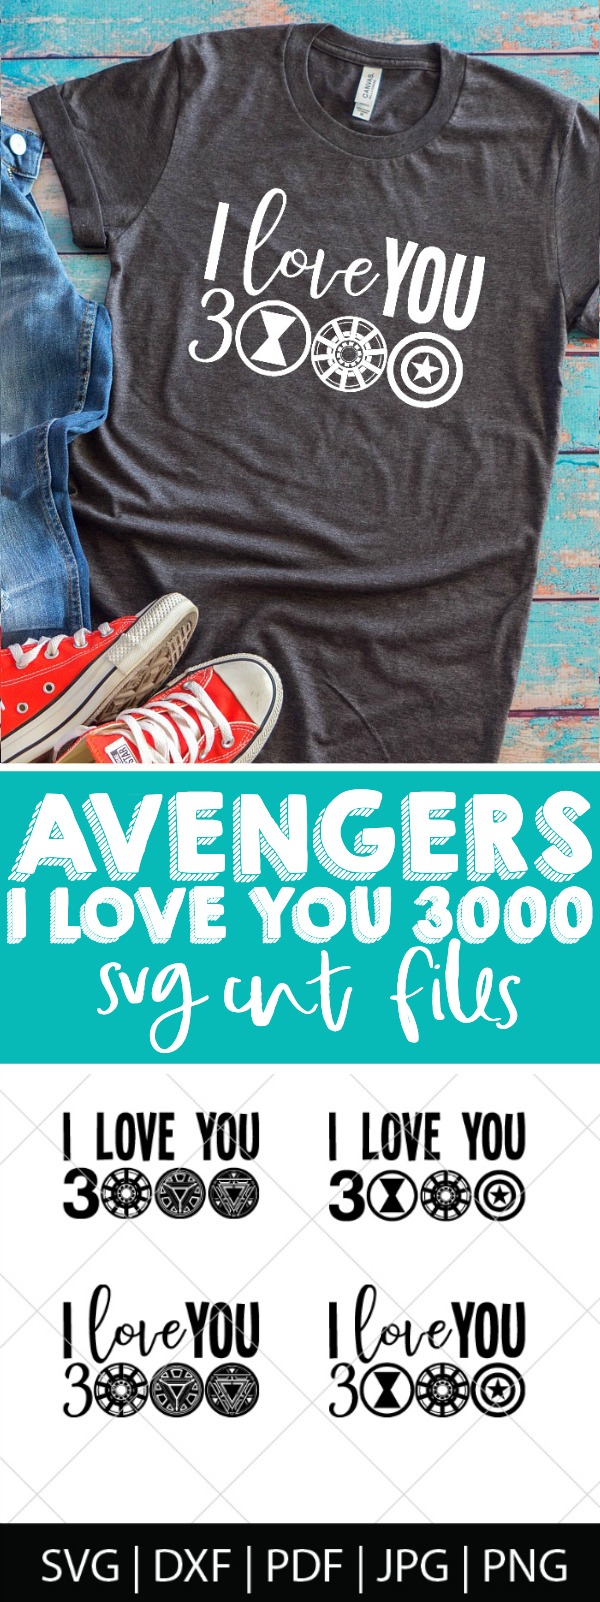 Download Avengers Endgame SVG Bundle - The Love Nerds